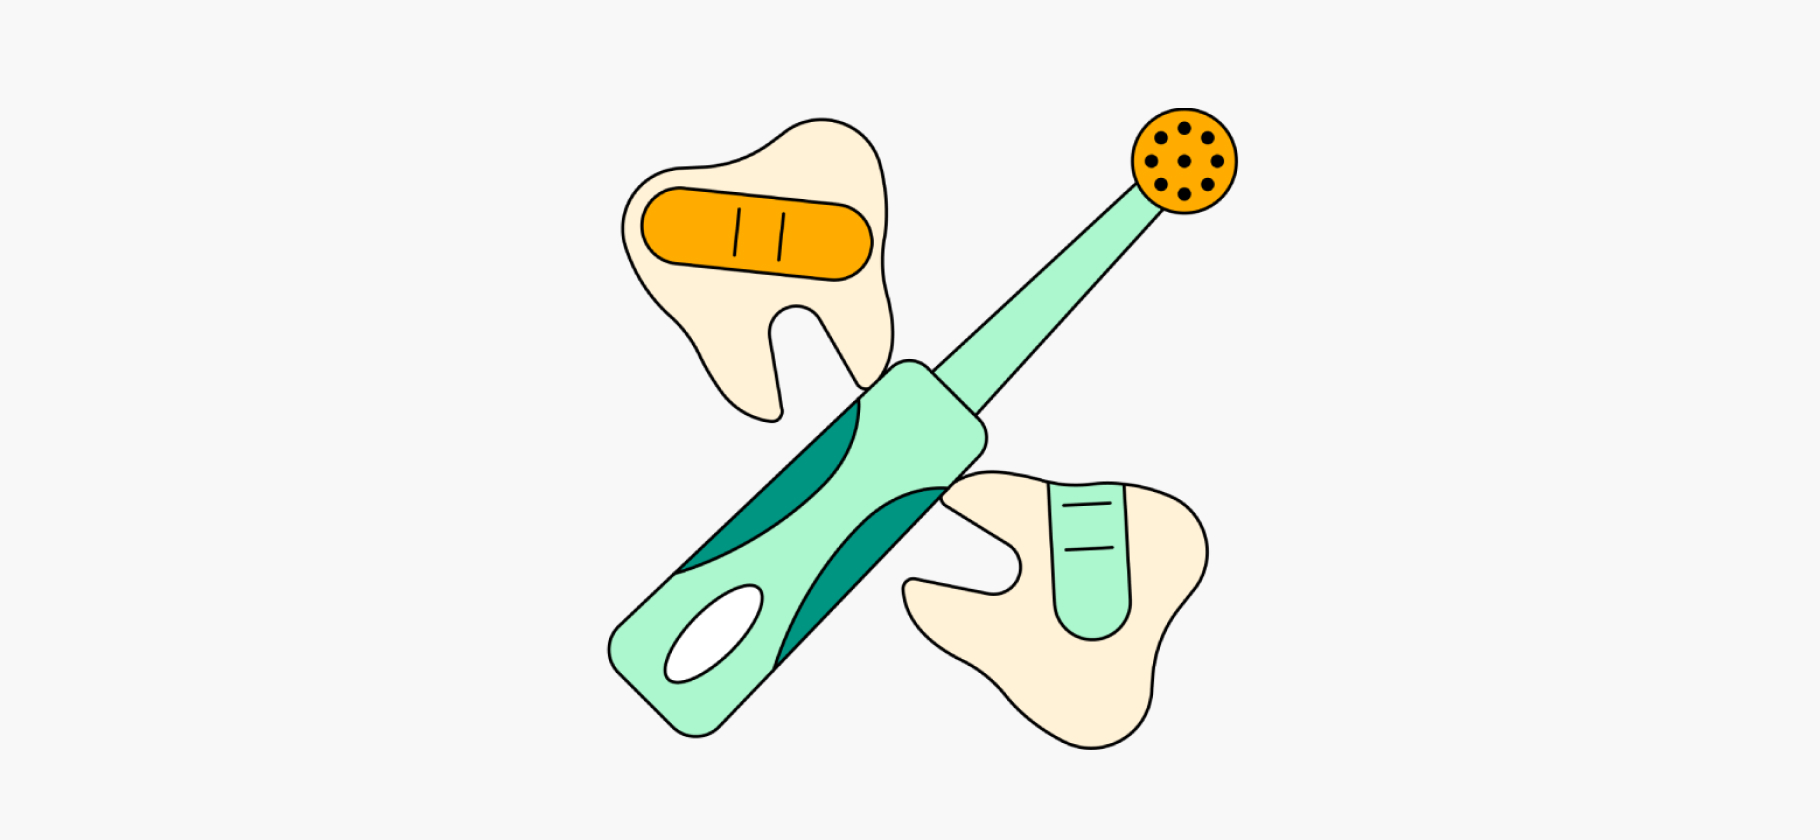 Говорят, электрические зубные щетки могут навредить зубам или деснам. Правда?